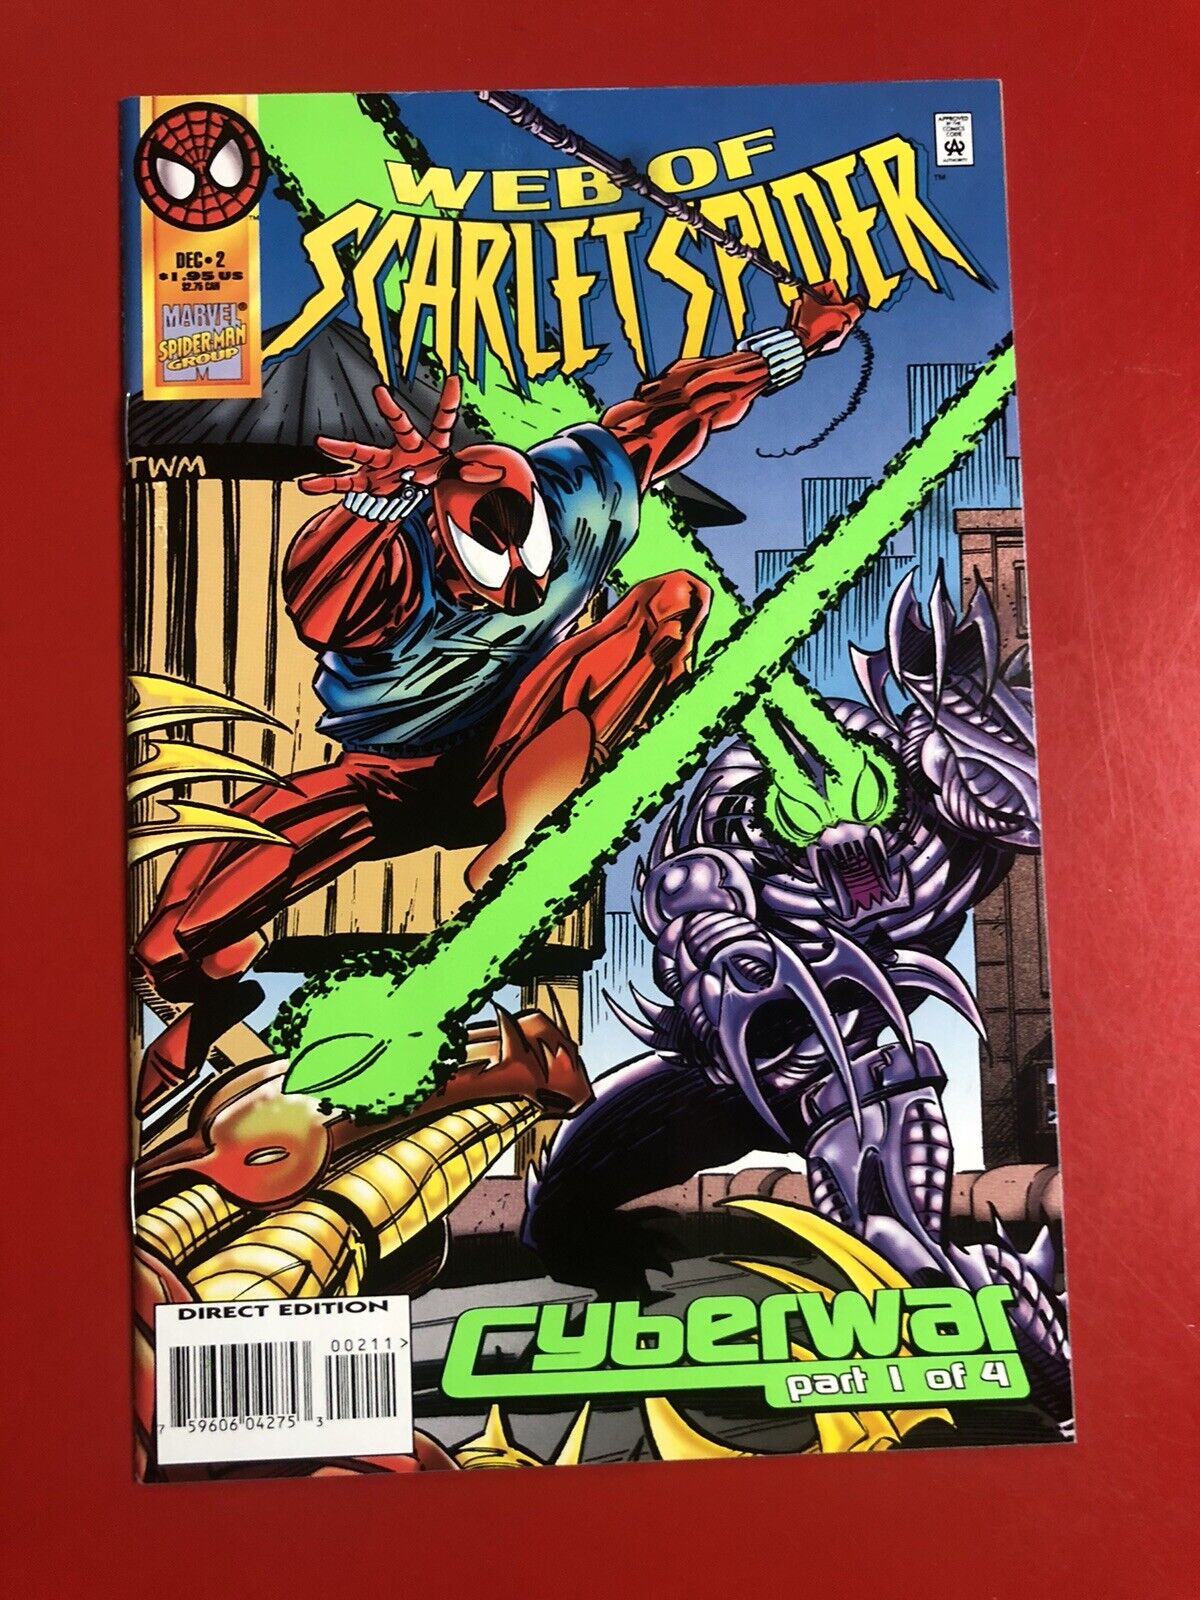 Web of Scarlet Spider #2 (Dec 1995, Marvel comics)